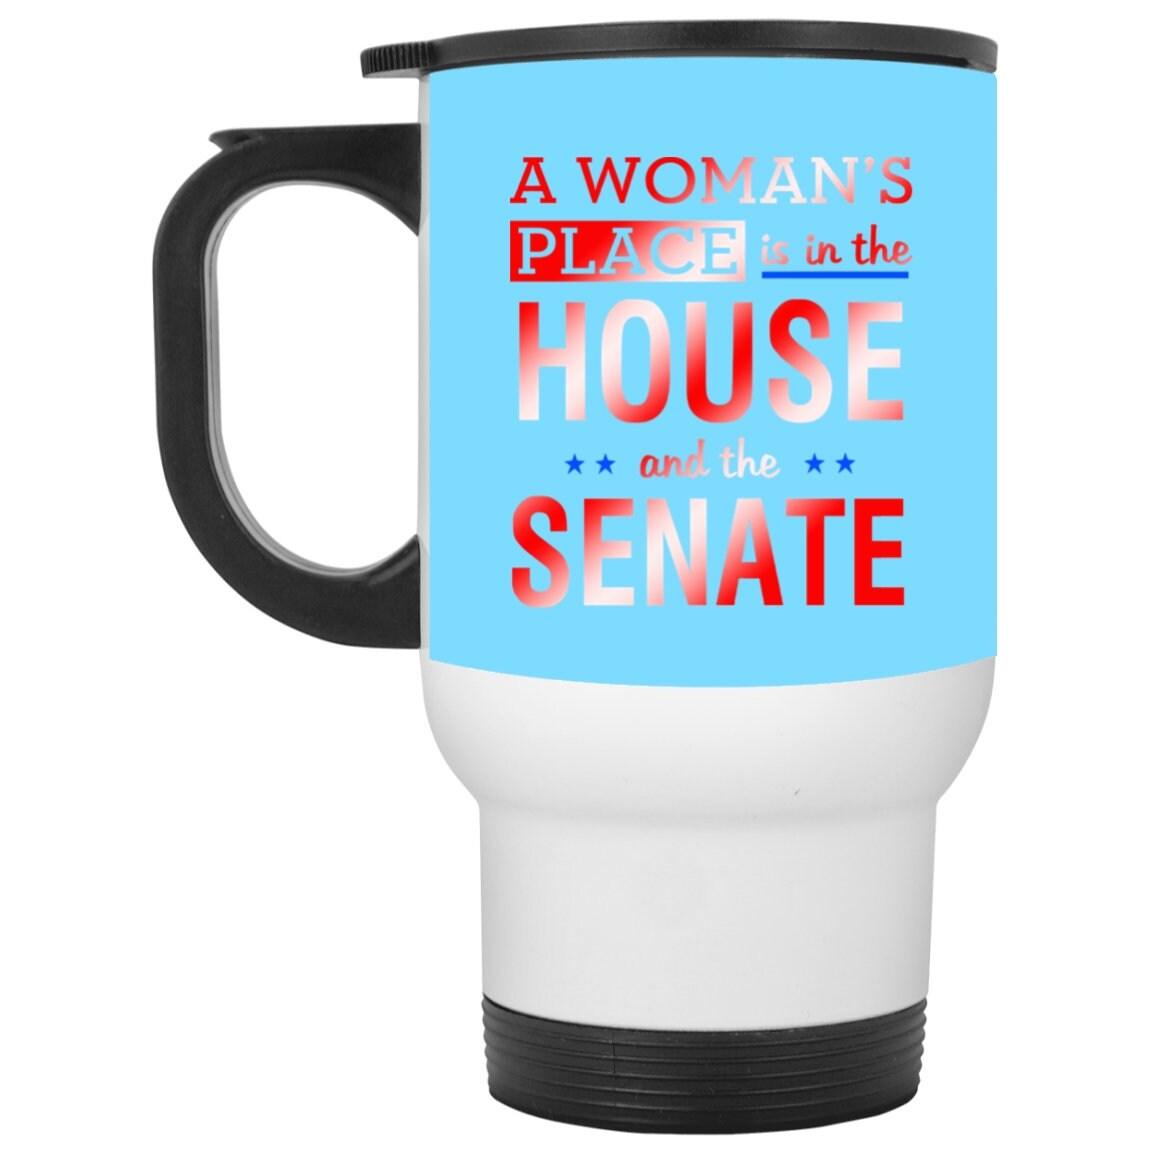 مكان المرأة في مجلس النواب ومجلس الشيوخ || كوب السفر الأبيض - plusminusco.com